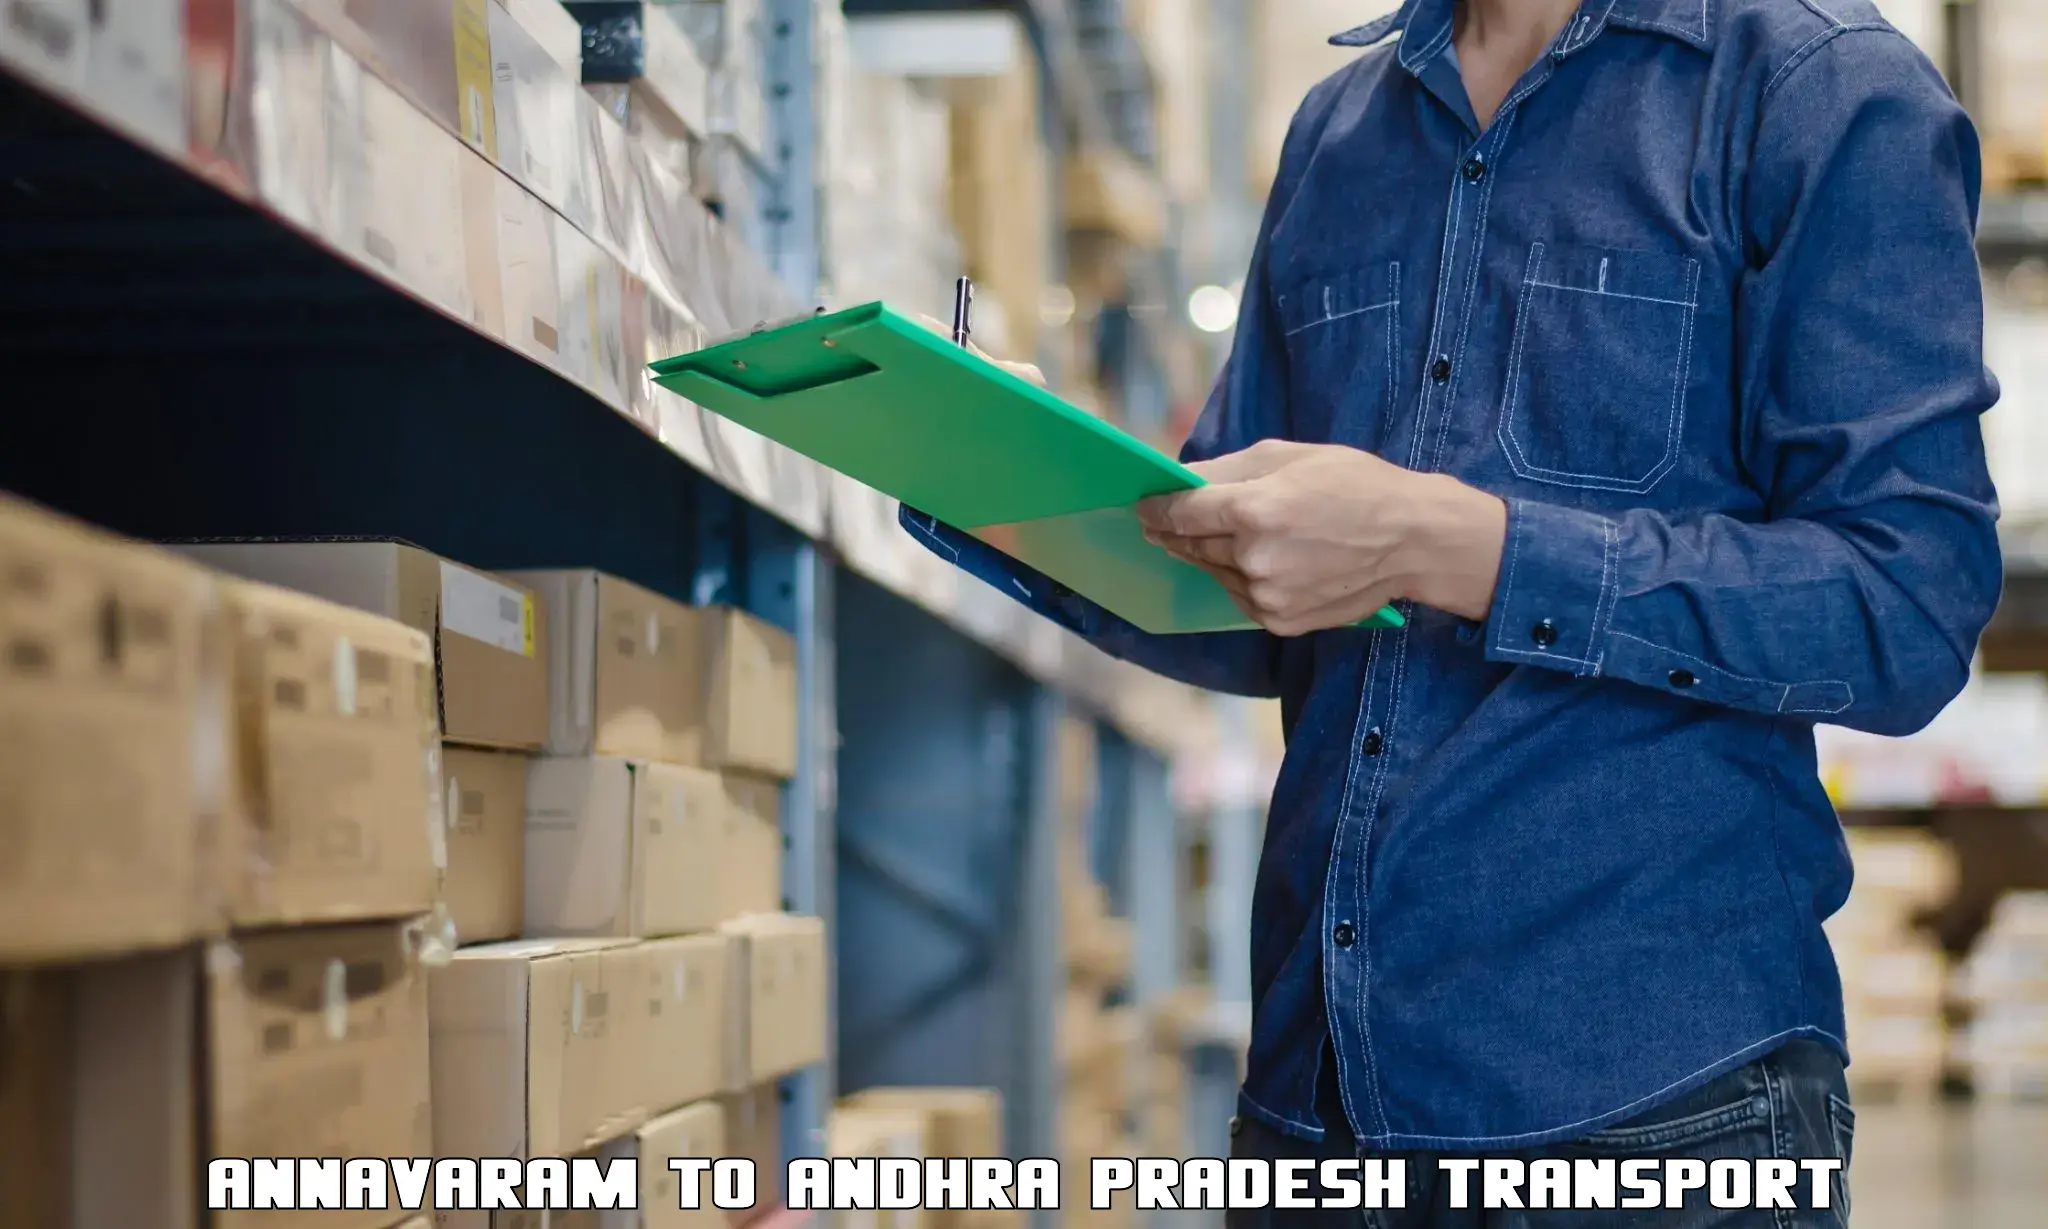 Container transport service Annavaram to Madakasira